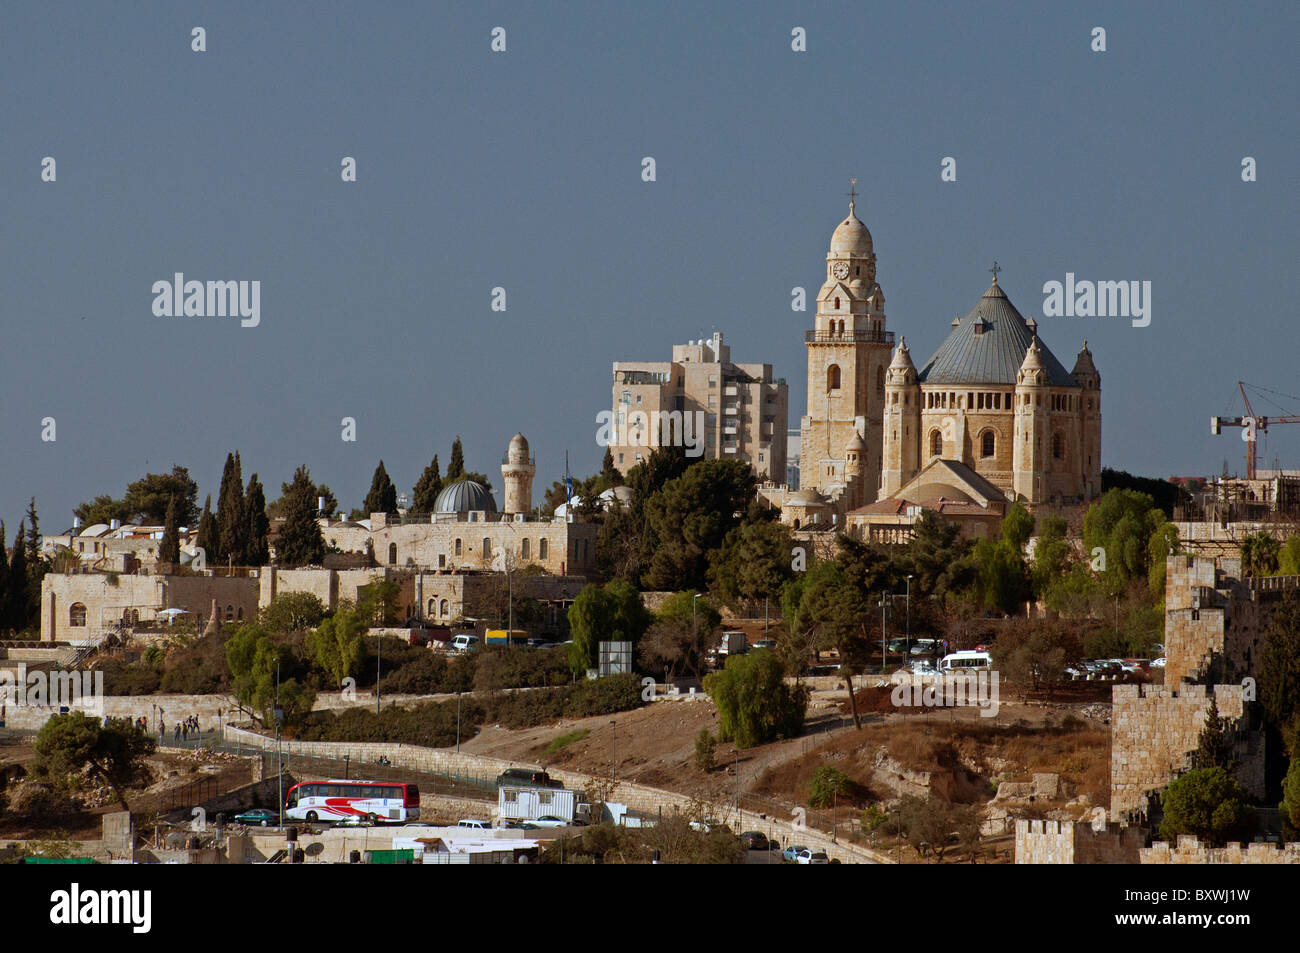 La Dormición Abadía es una estructura masiva sobre el monte de Sión, justo fuera de la Puerta de Sión de Jerusalén. Foto de stock